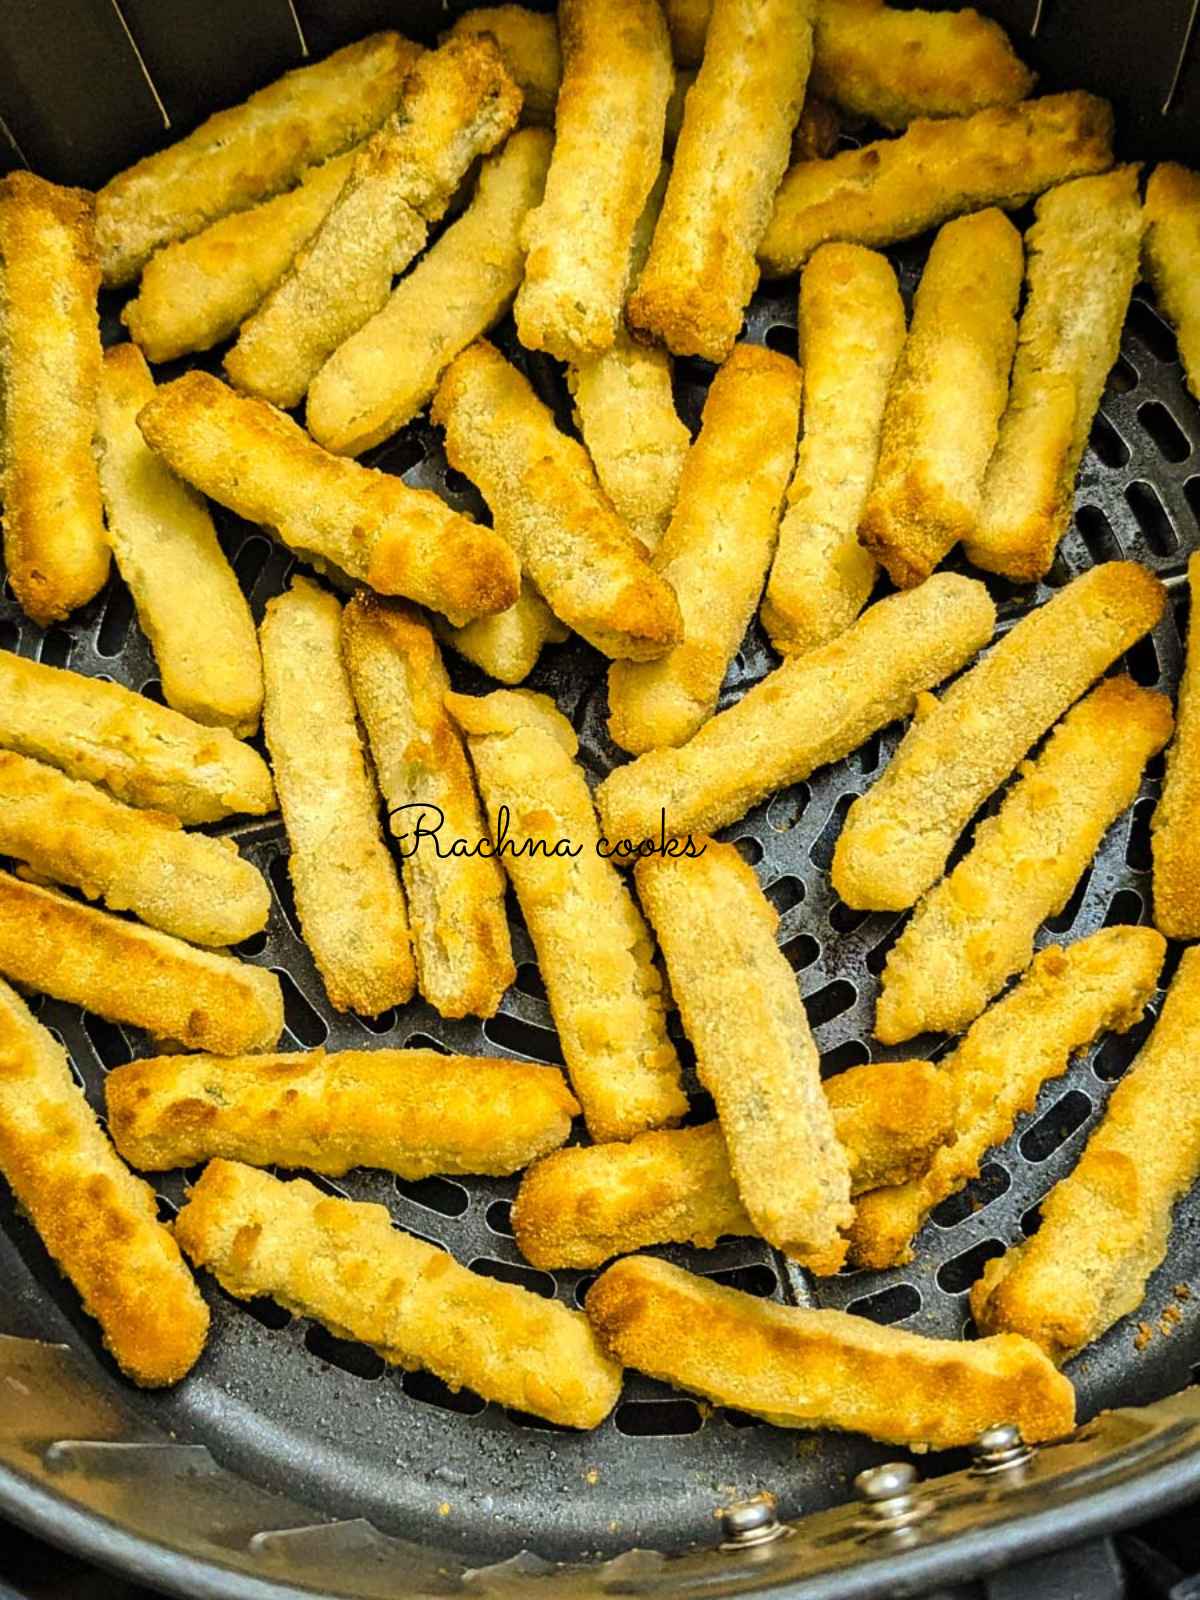 Golden air fried chicken fries in air fryer basket